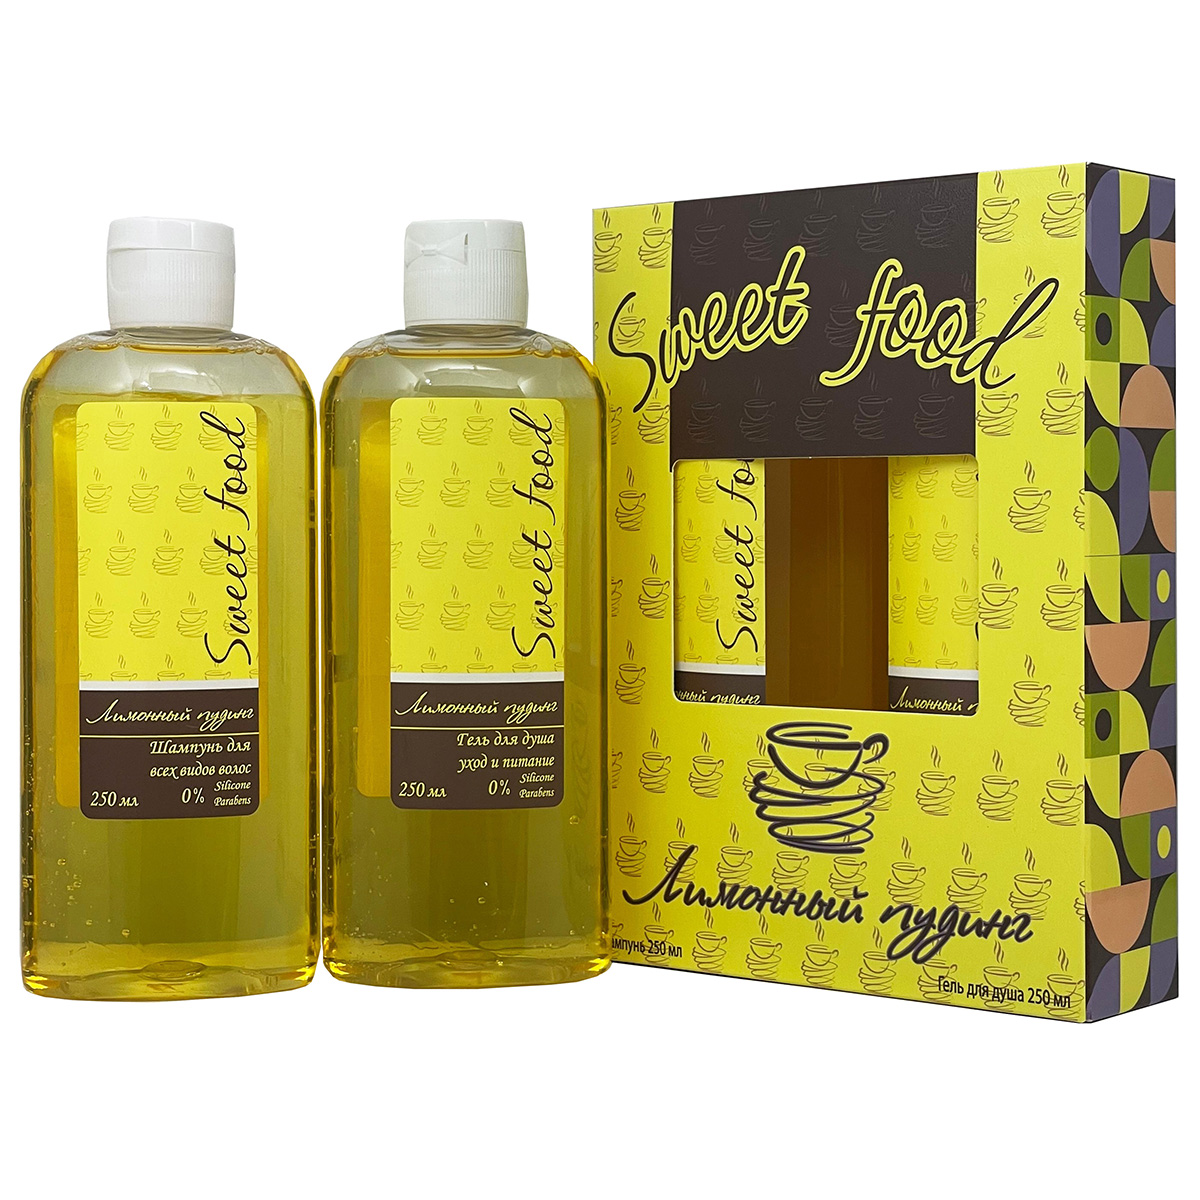 Подарочный набор Festiva Лимонный пудинг шампунь для волос 250мл гель для душа 250мл подсвечник желтый люстр ода 8 5х7 5 см 250мл